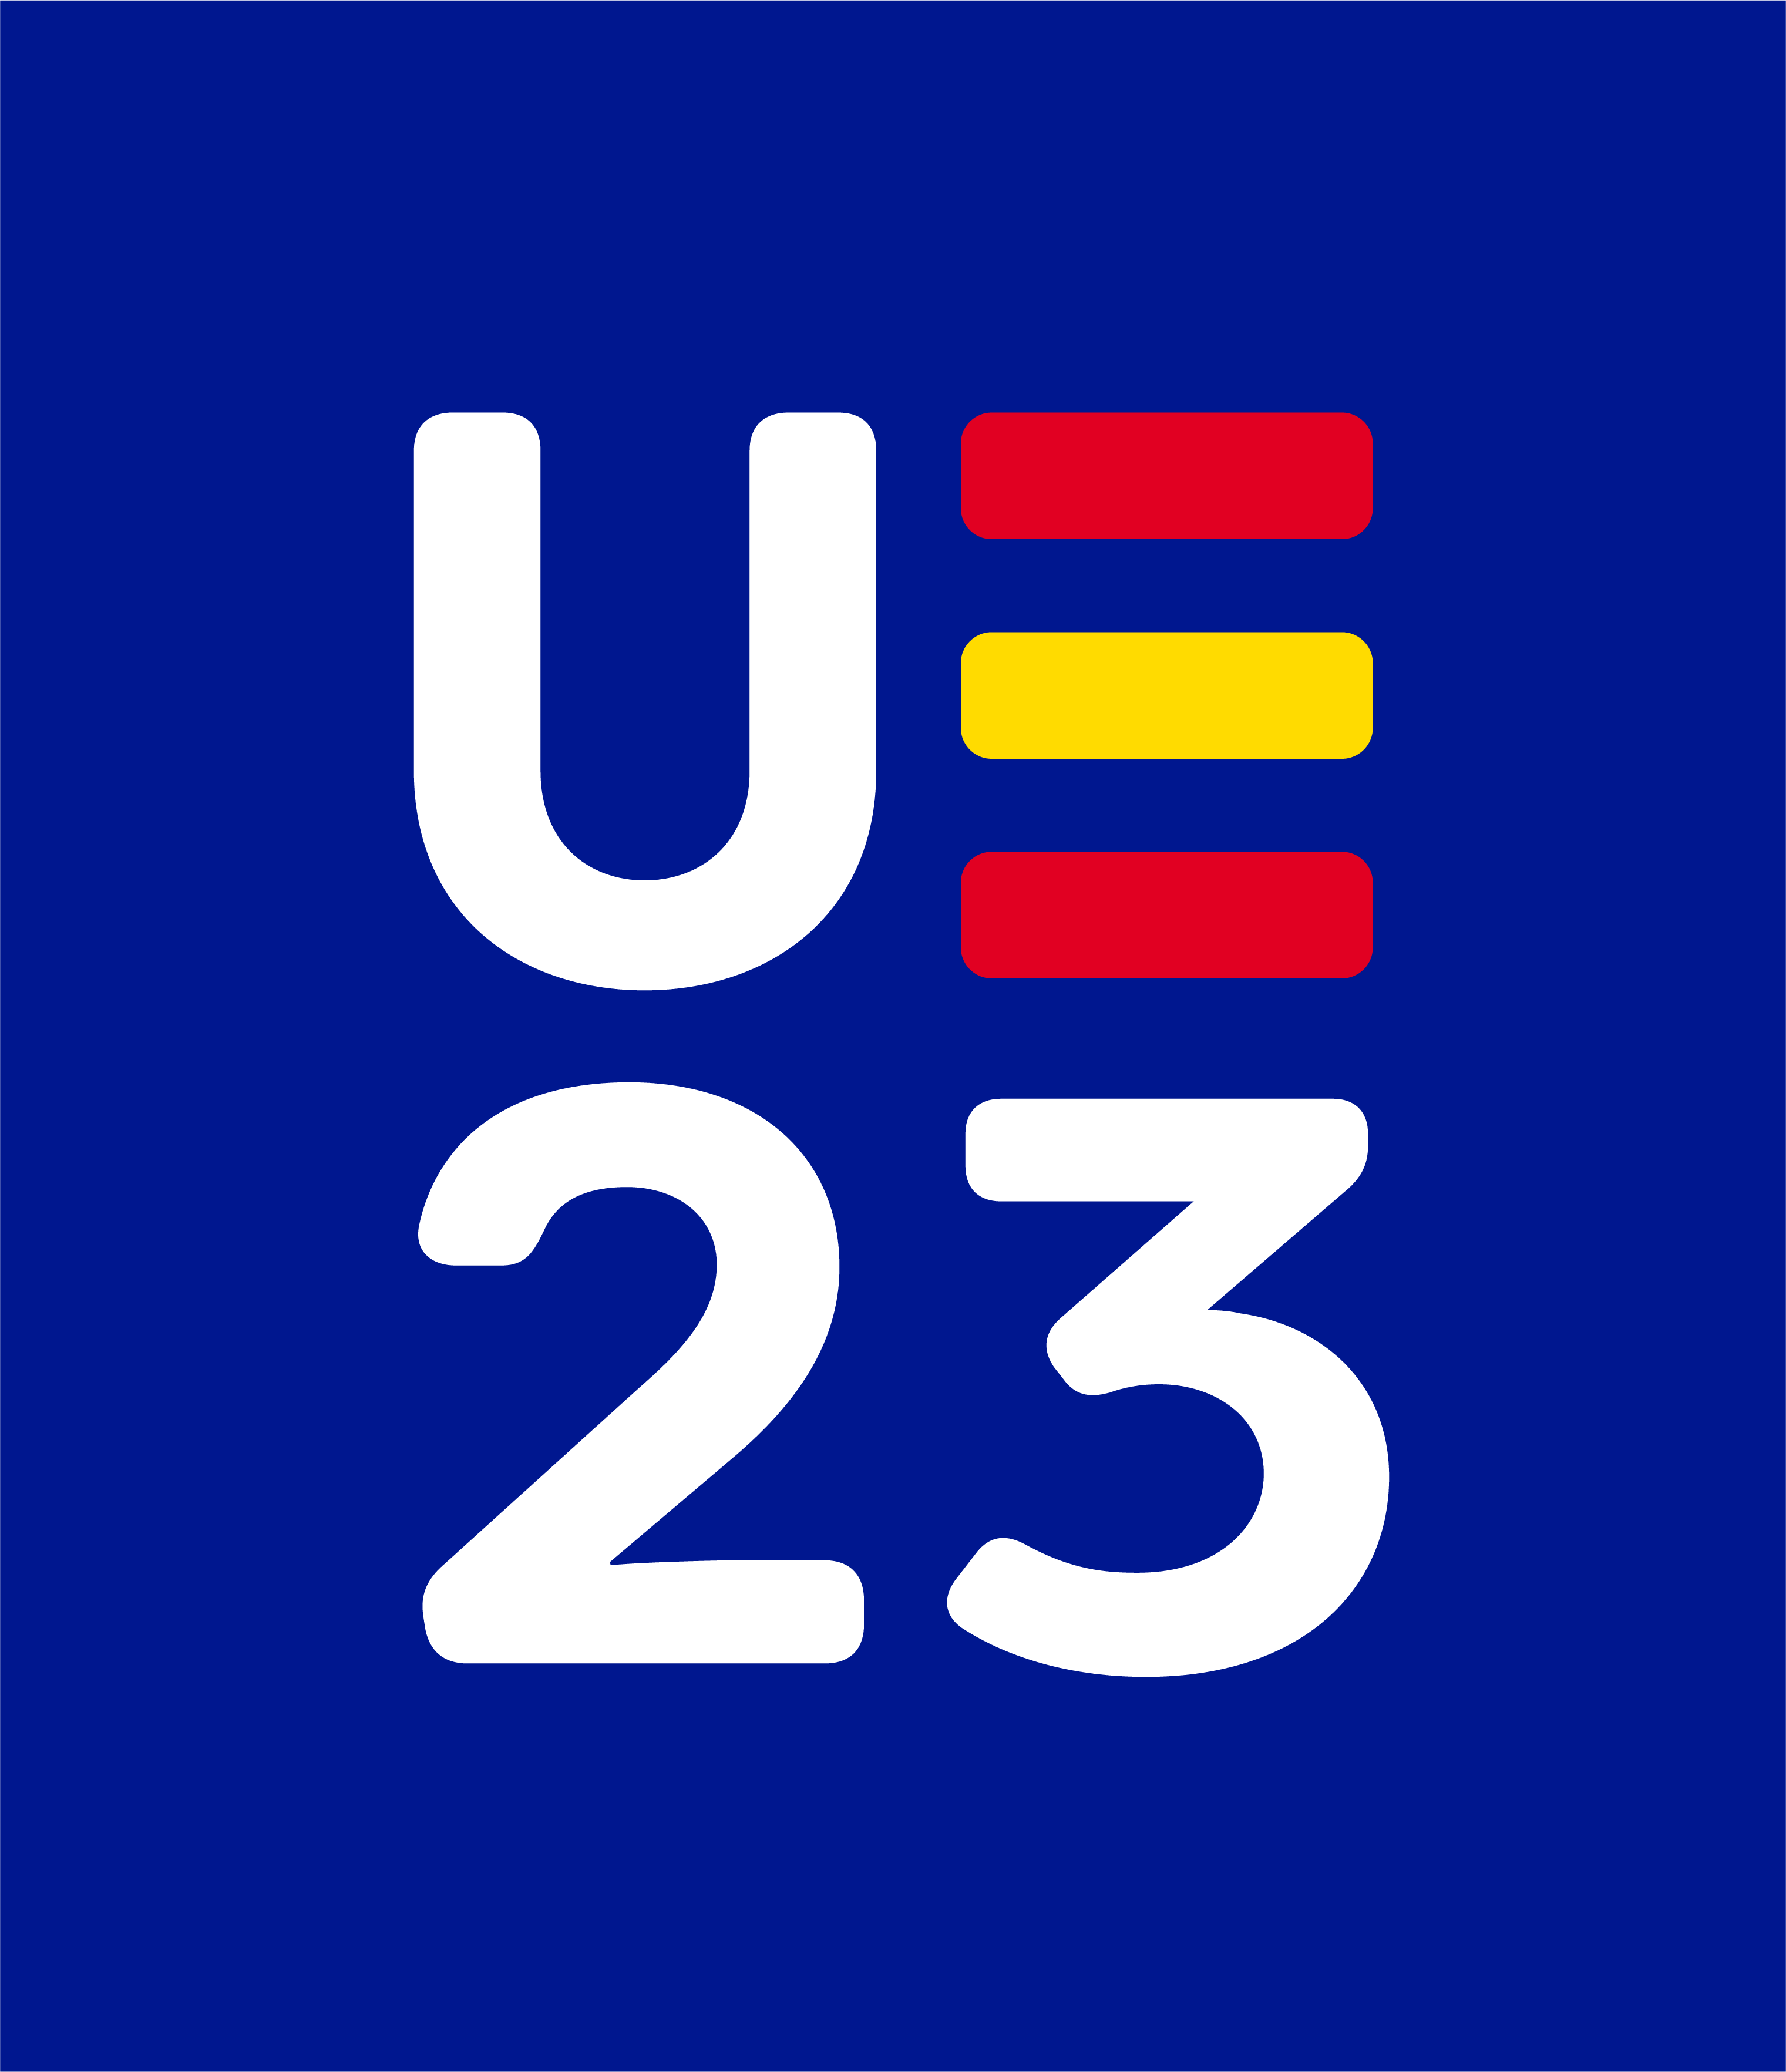 UE23